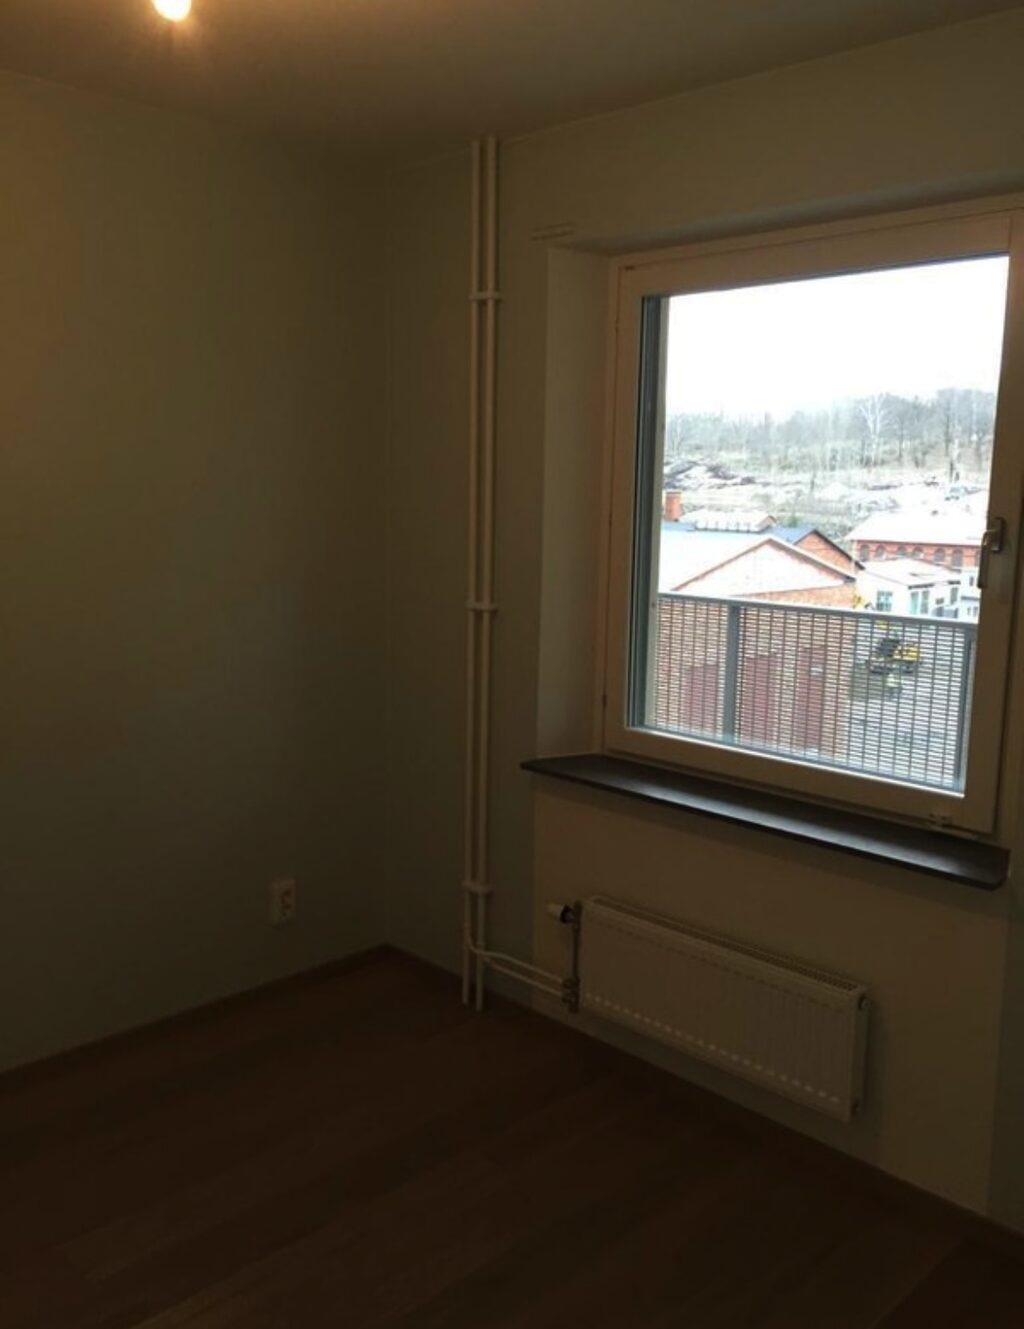 Lägenhetsbyte - Husarvikstorget 3, 115 47 Stockholm